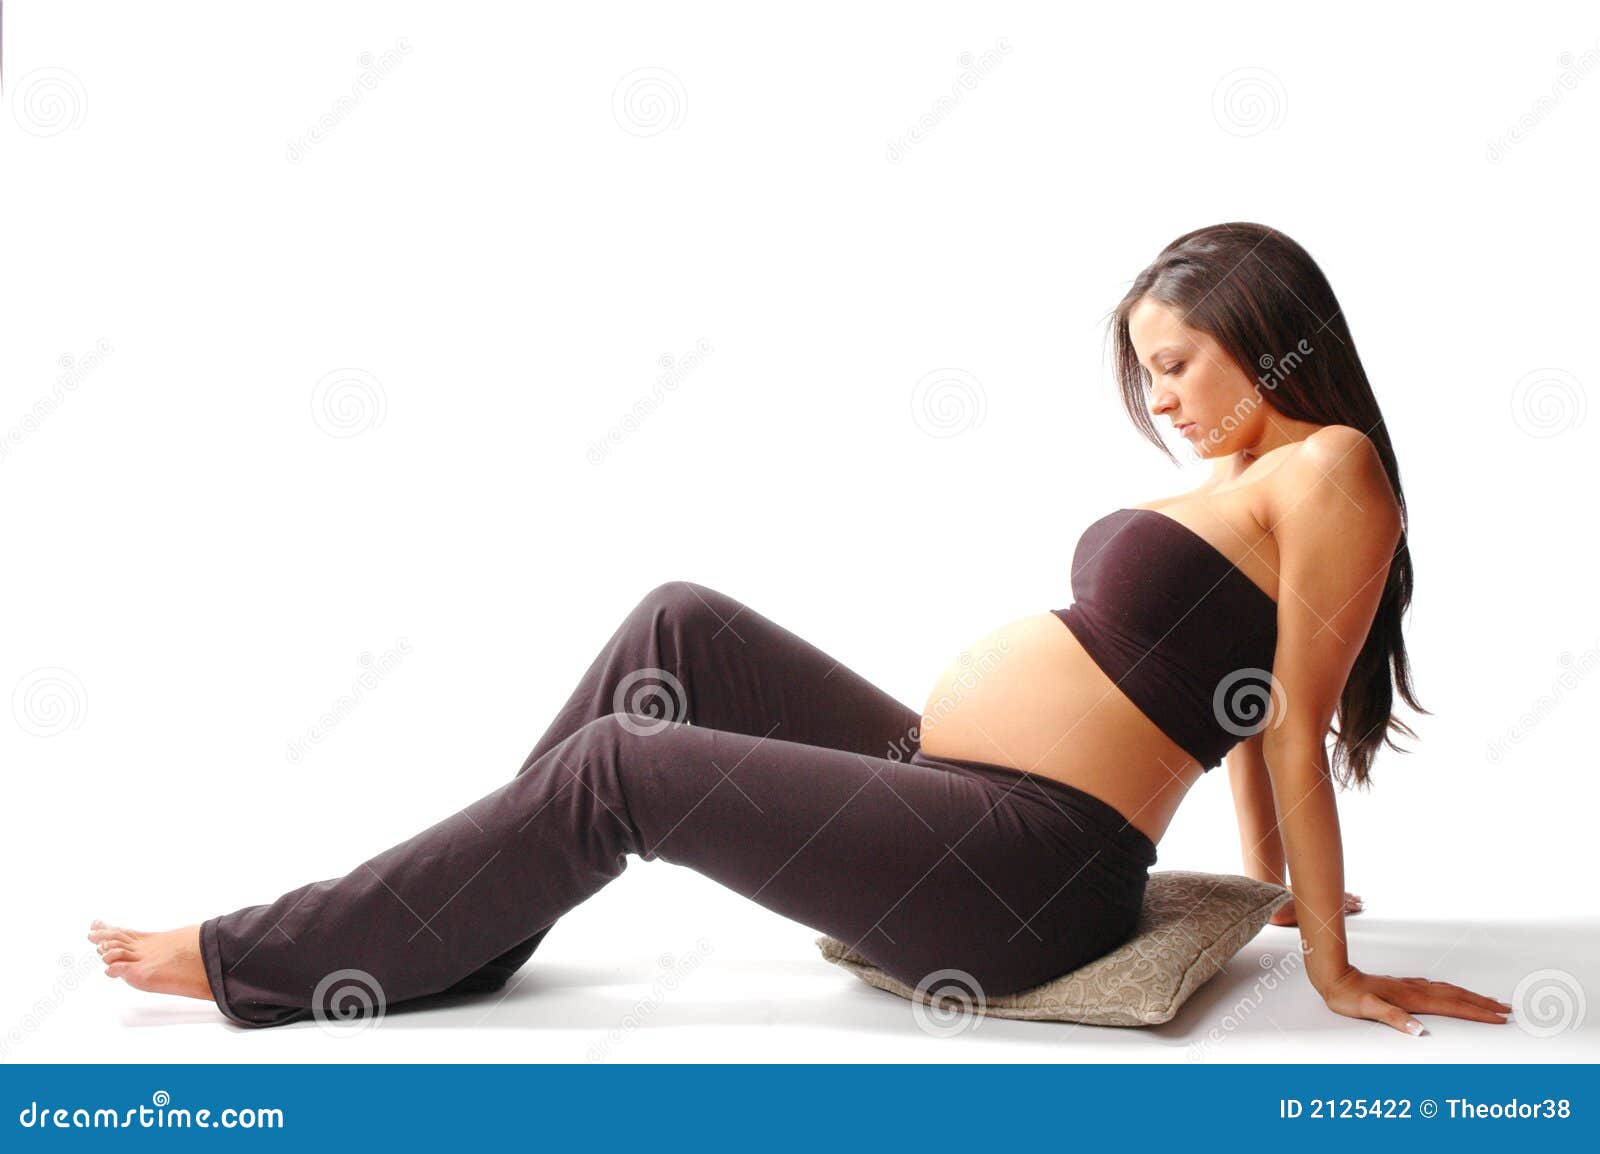 Sexy Pregnant Picture 116